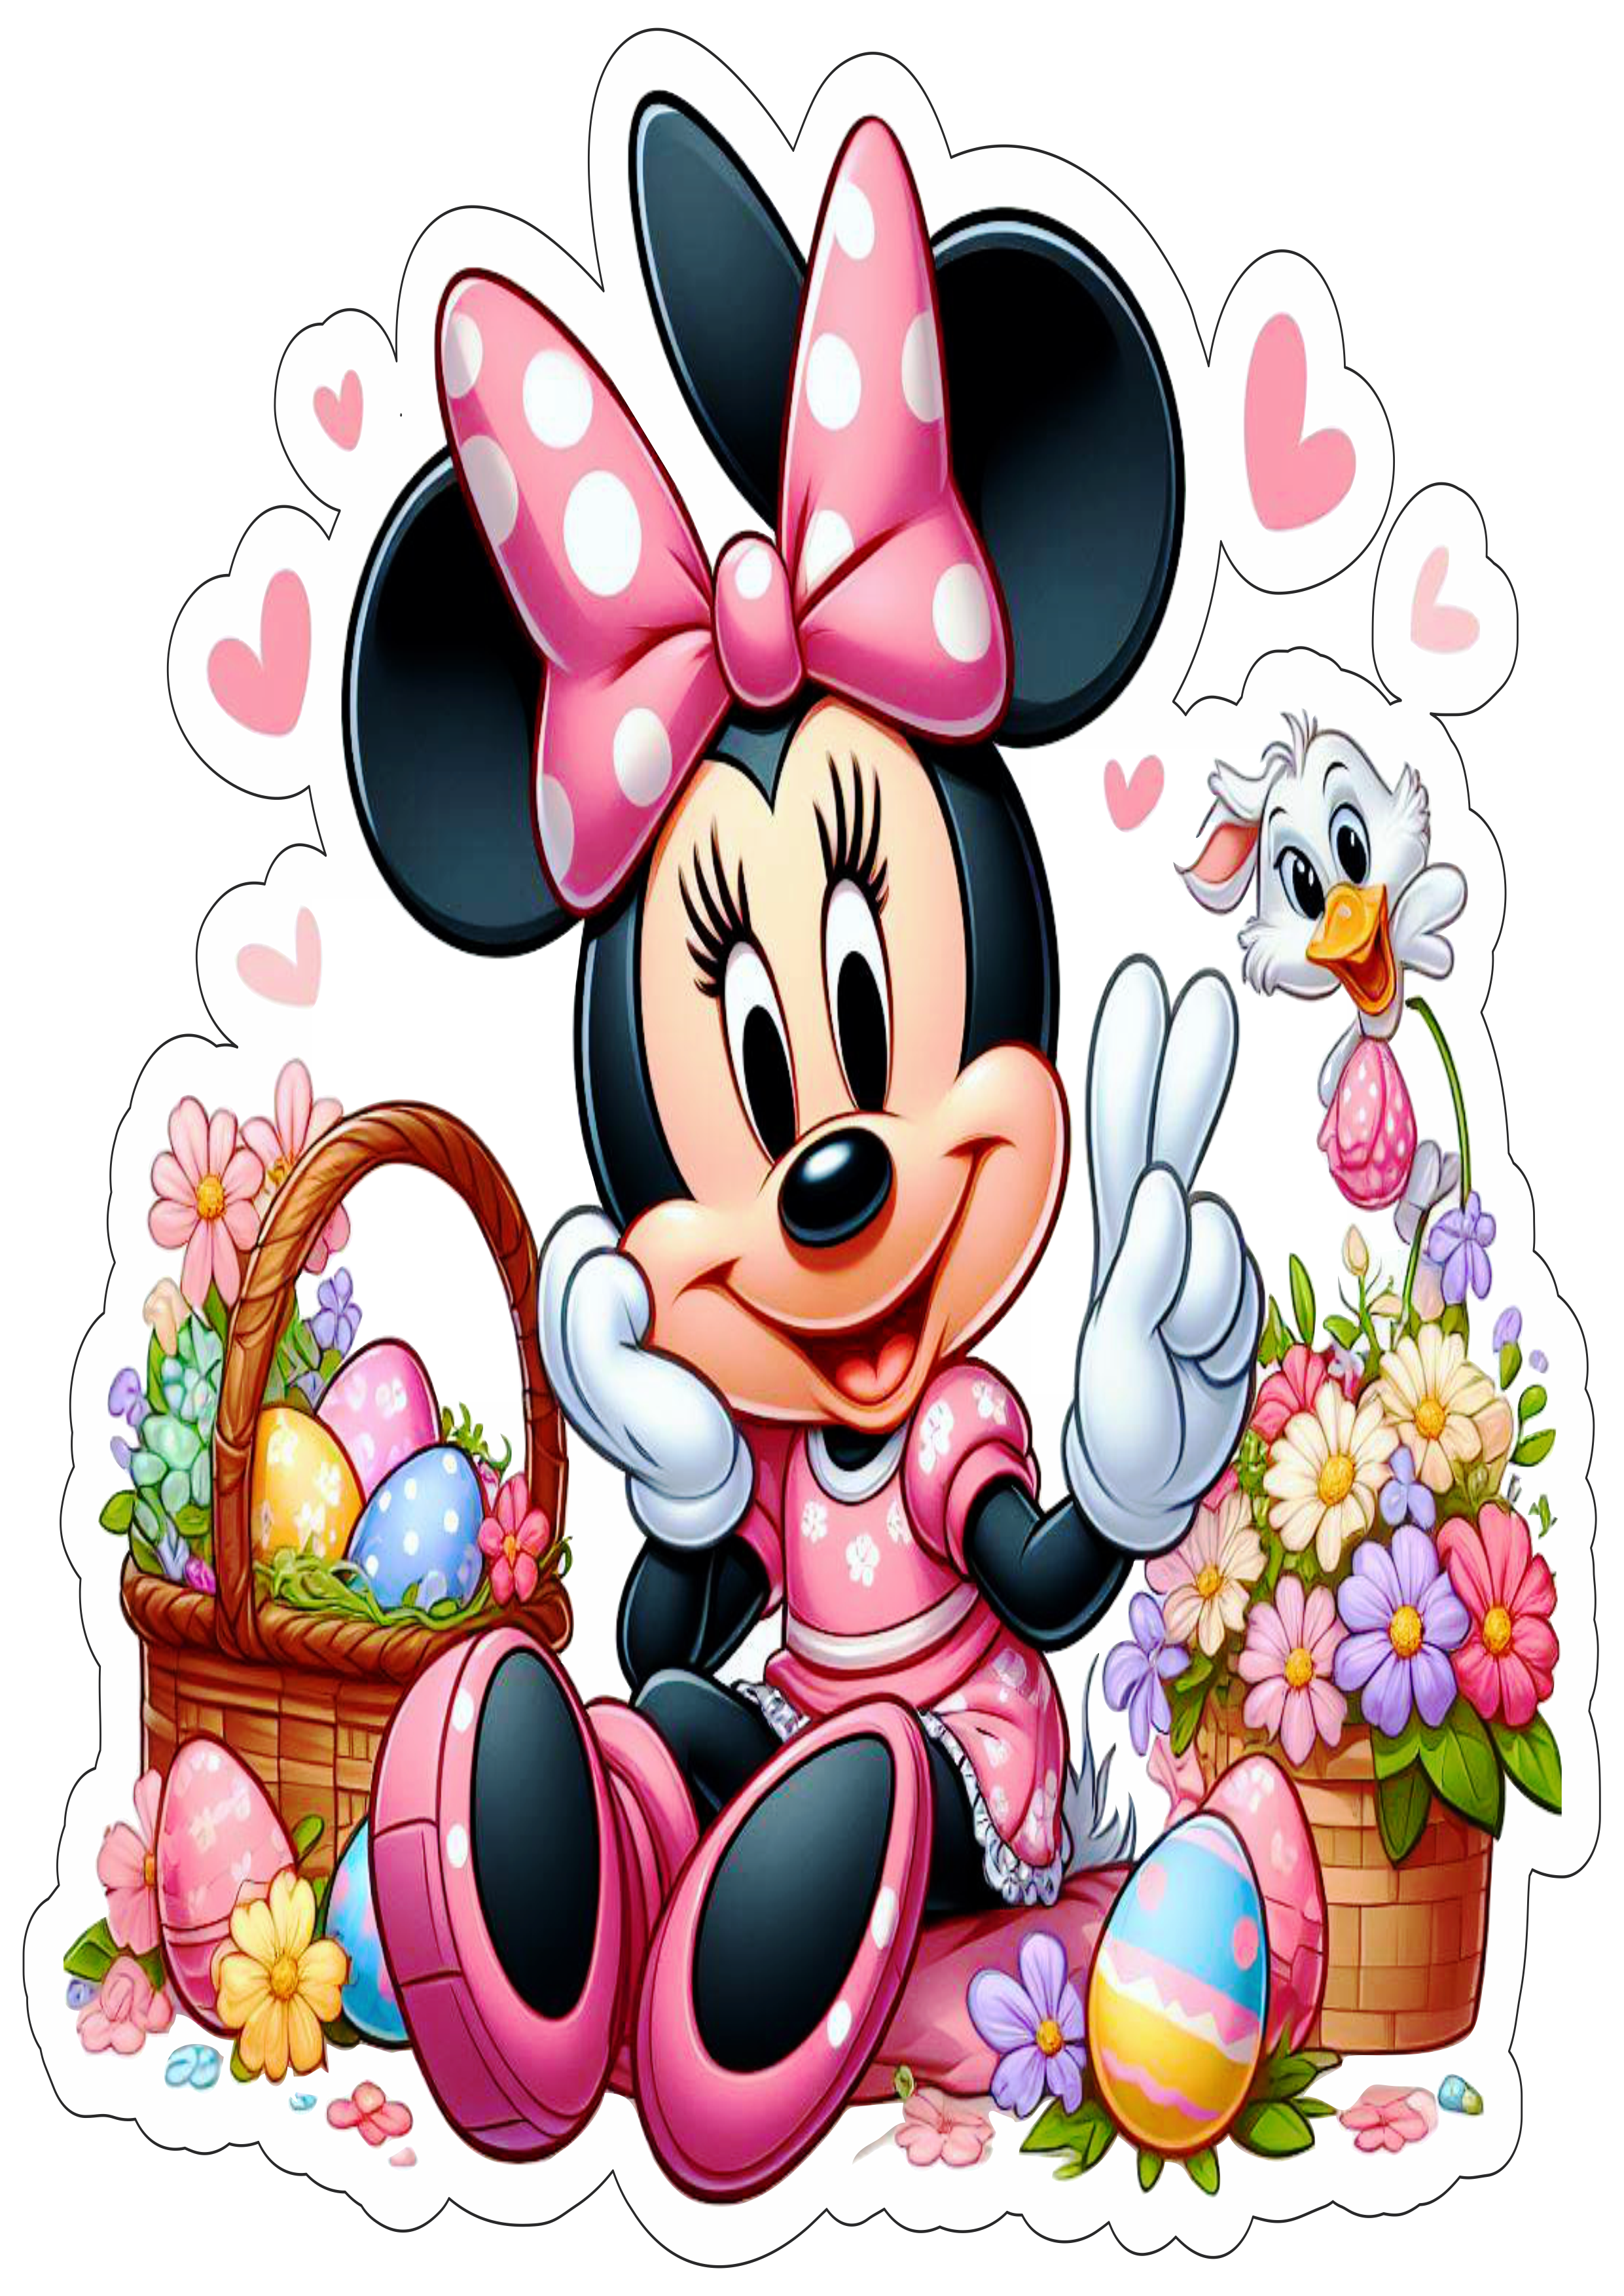 Desenho infantil Minnie decoração de páscoa imagem com fundo transparente ilustração cartoon ovos de chocolate flores png